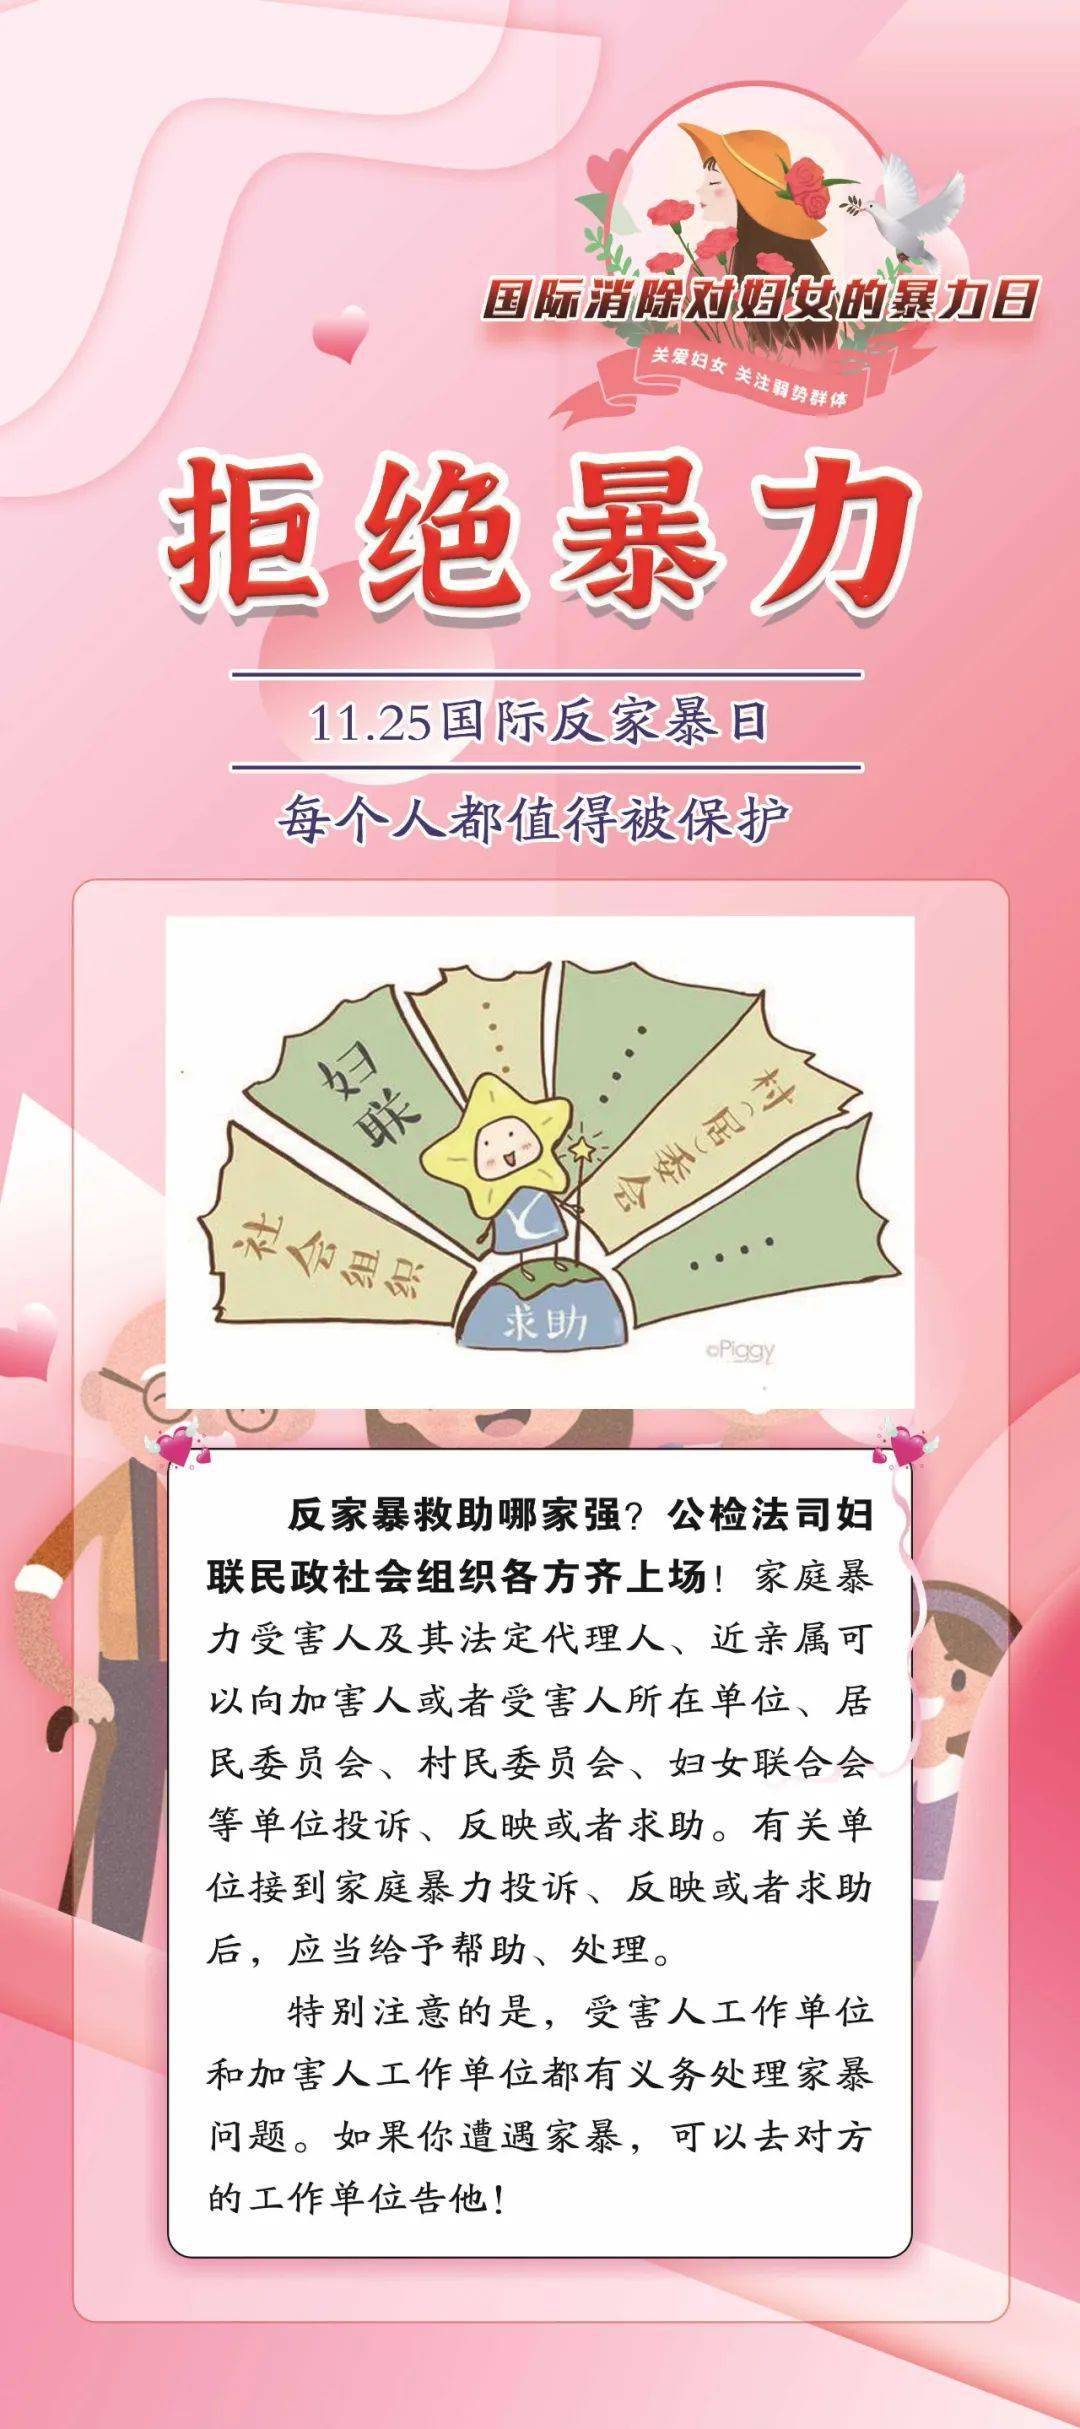 【微普法】一图读懂《中华人民共和国反家庭暴力法》